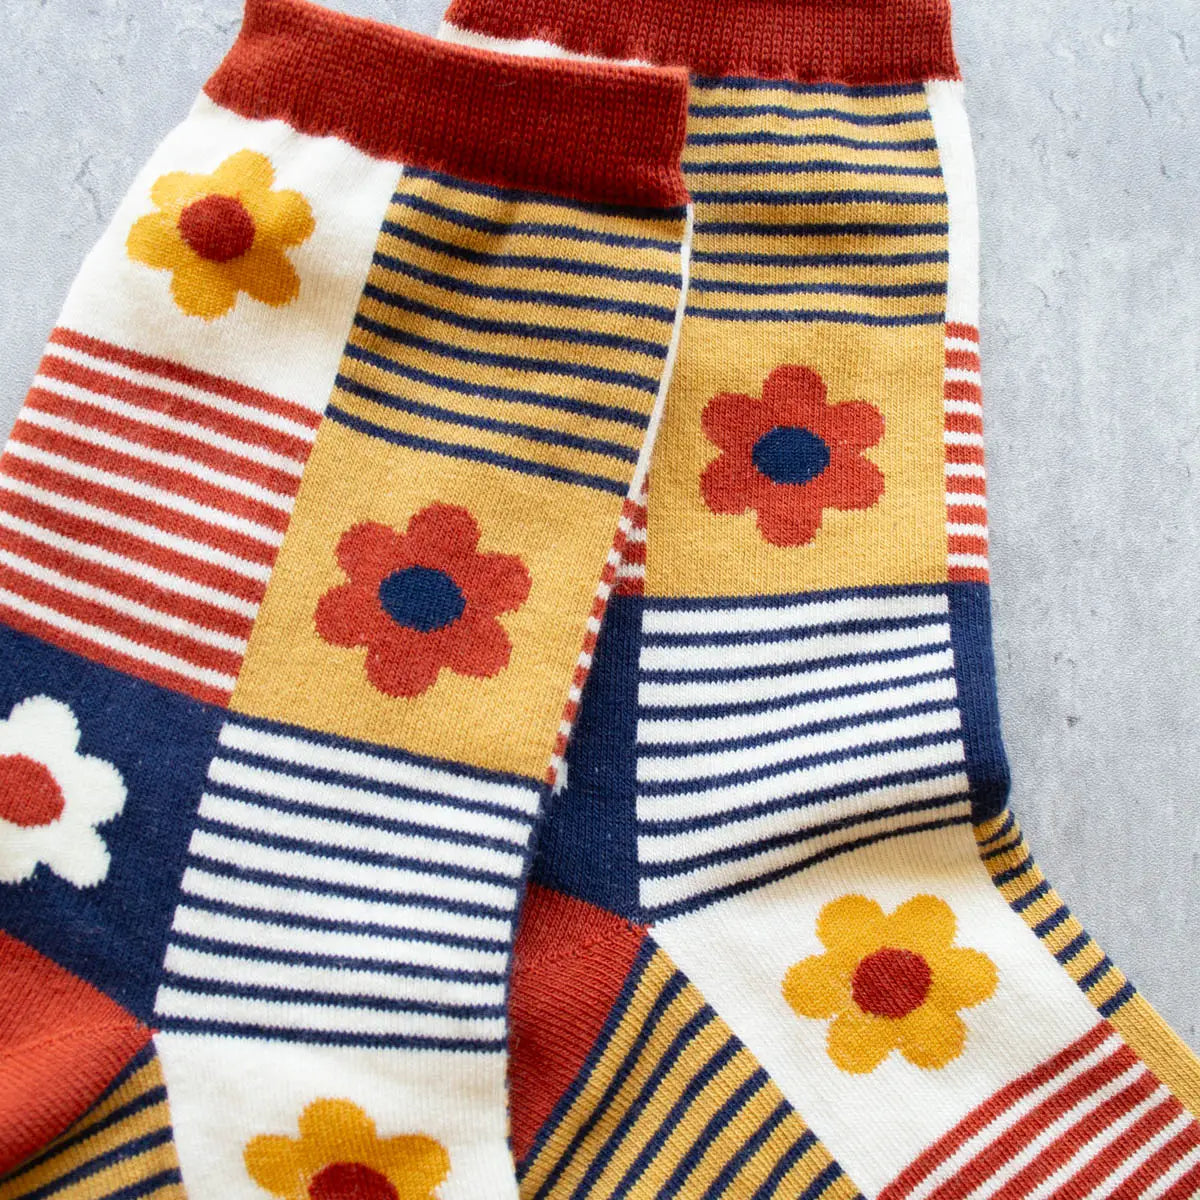 Daisies & Stripes Socks - 3 Colorways